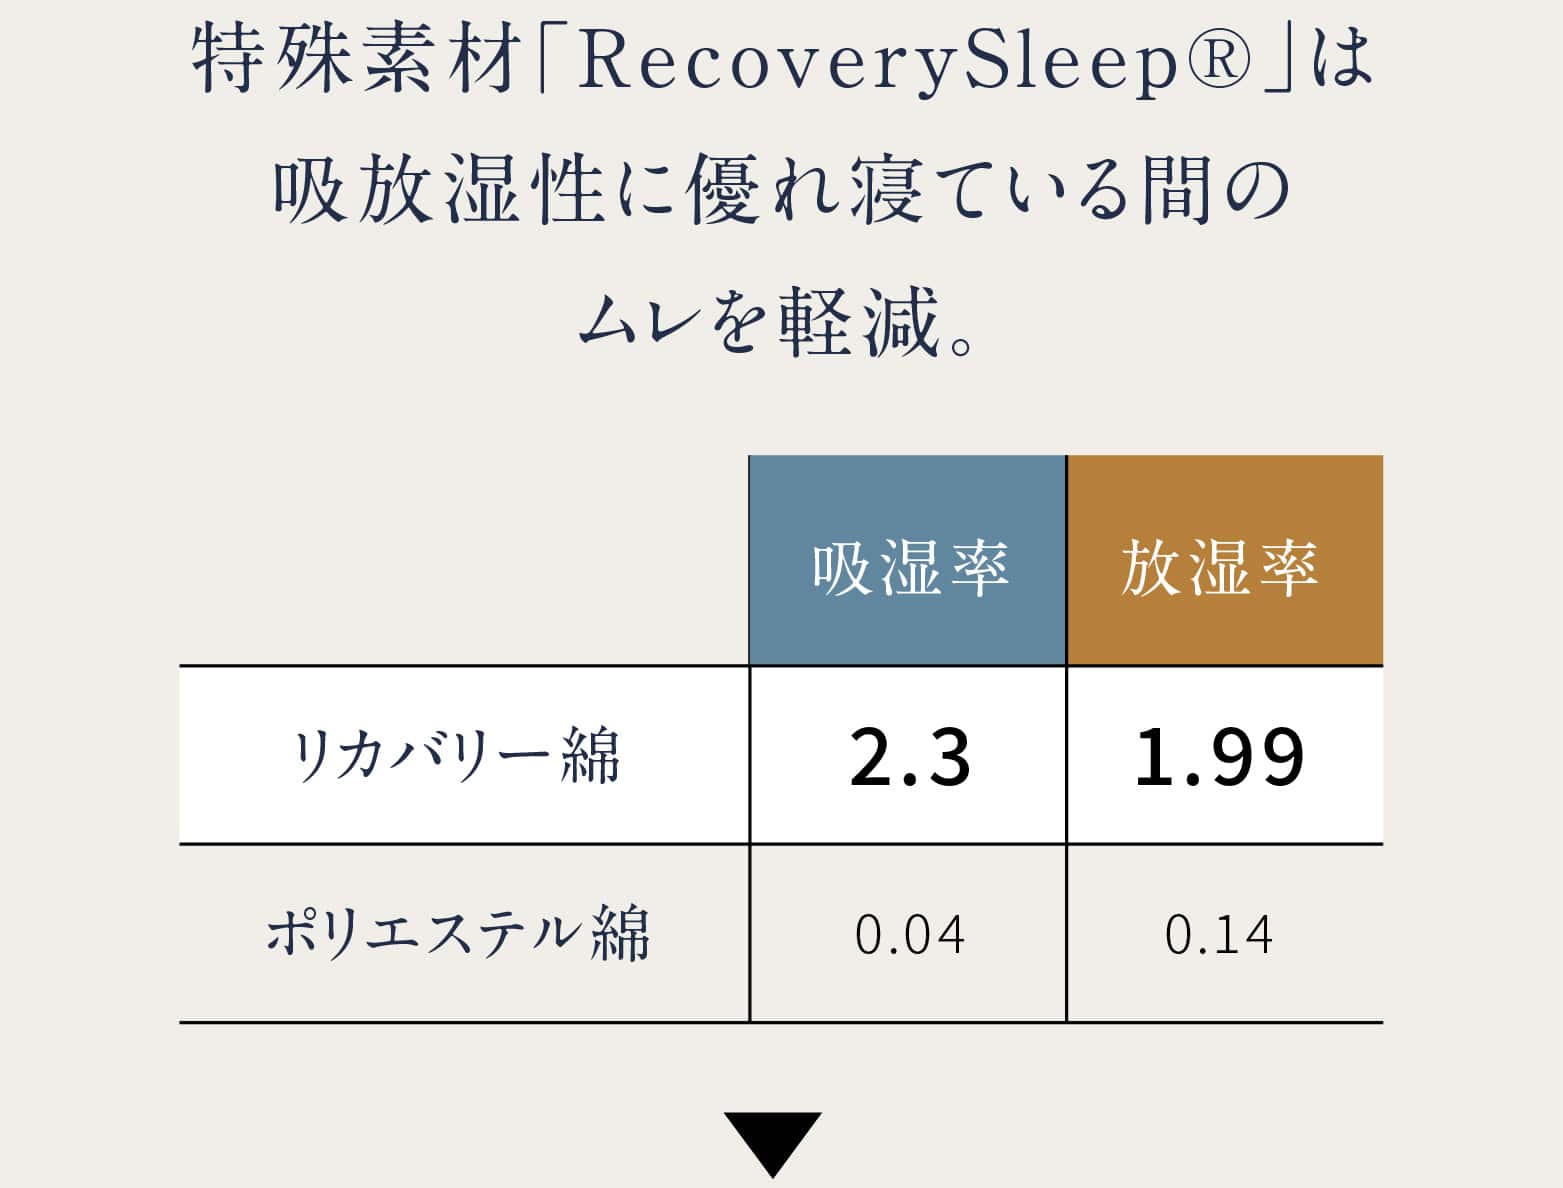 特殊素材「RecoverySleep®」は吸放湿性に優れ寝ている間のムレを軽減。